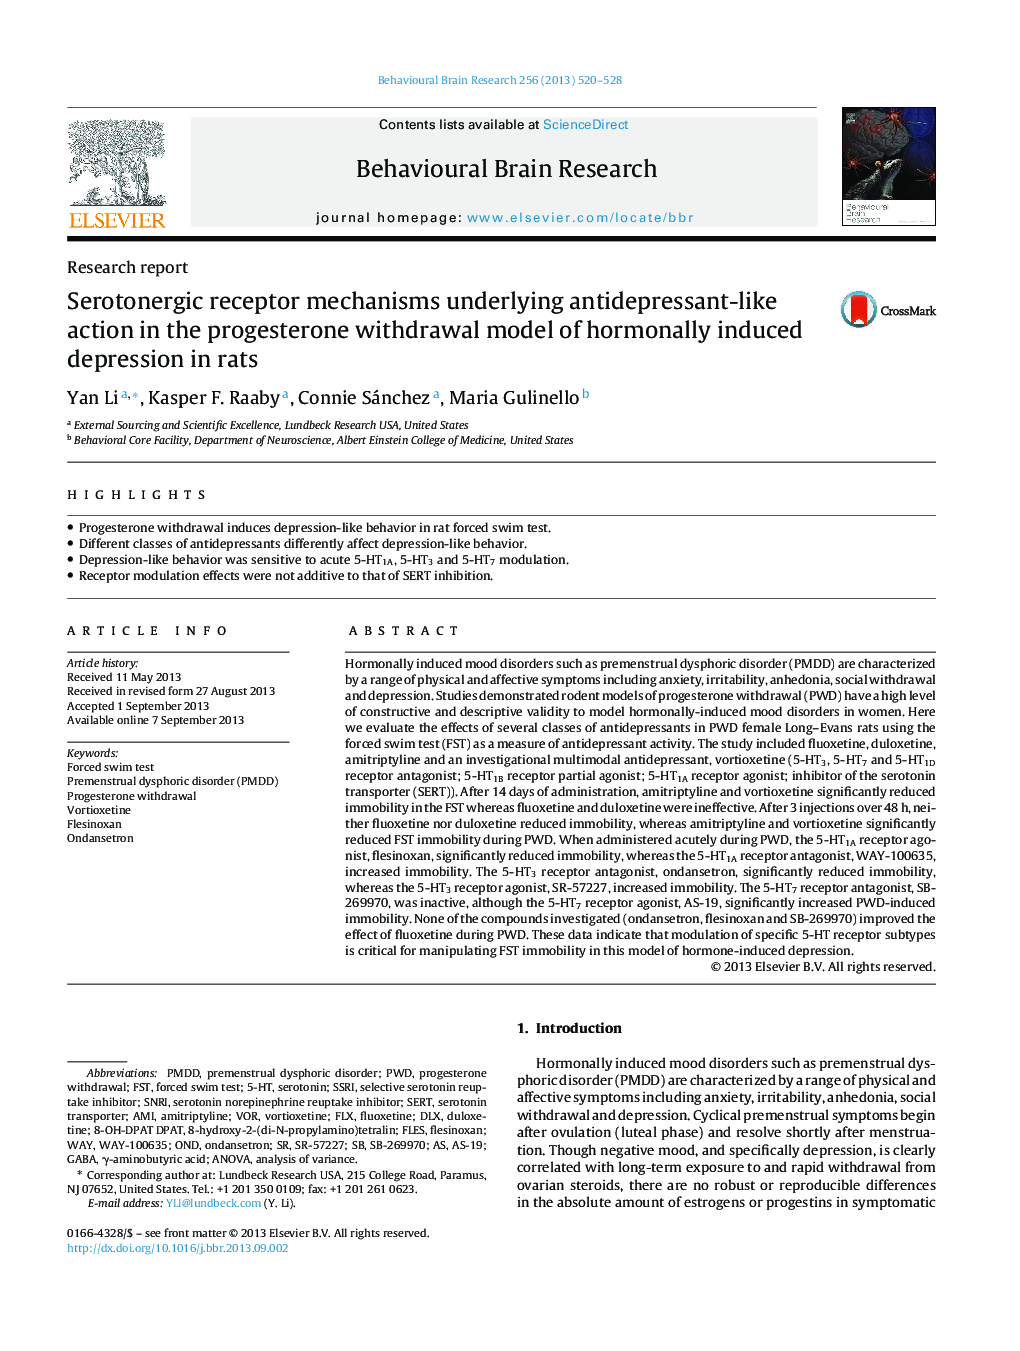 گزارش تحقیقاتی مکانیسم گیرنده های سروتونرژیک مبتنی بر اثر ضد افسردگی در مدل برداشت پروژسترون از افسردگی ناشی از هورمون در موش صحرایی 